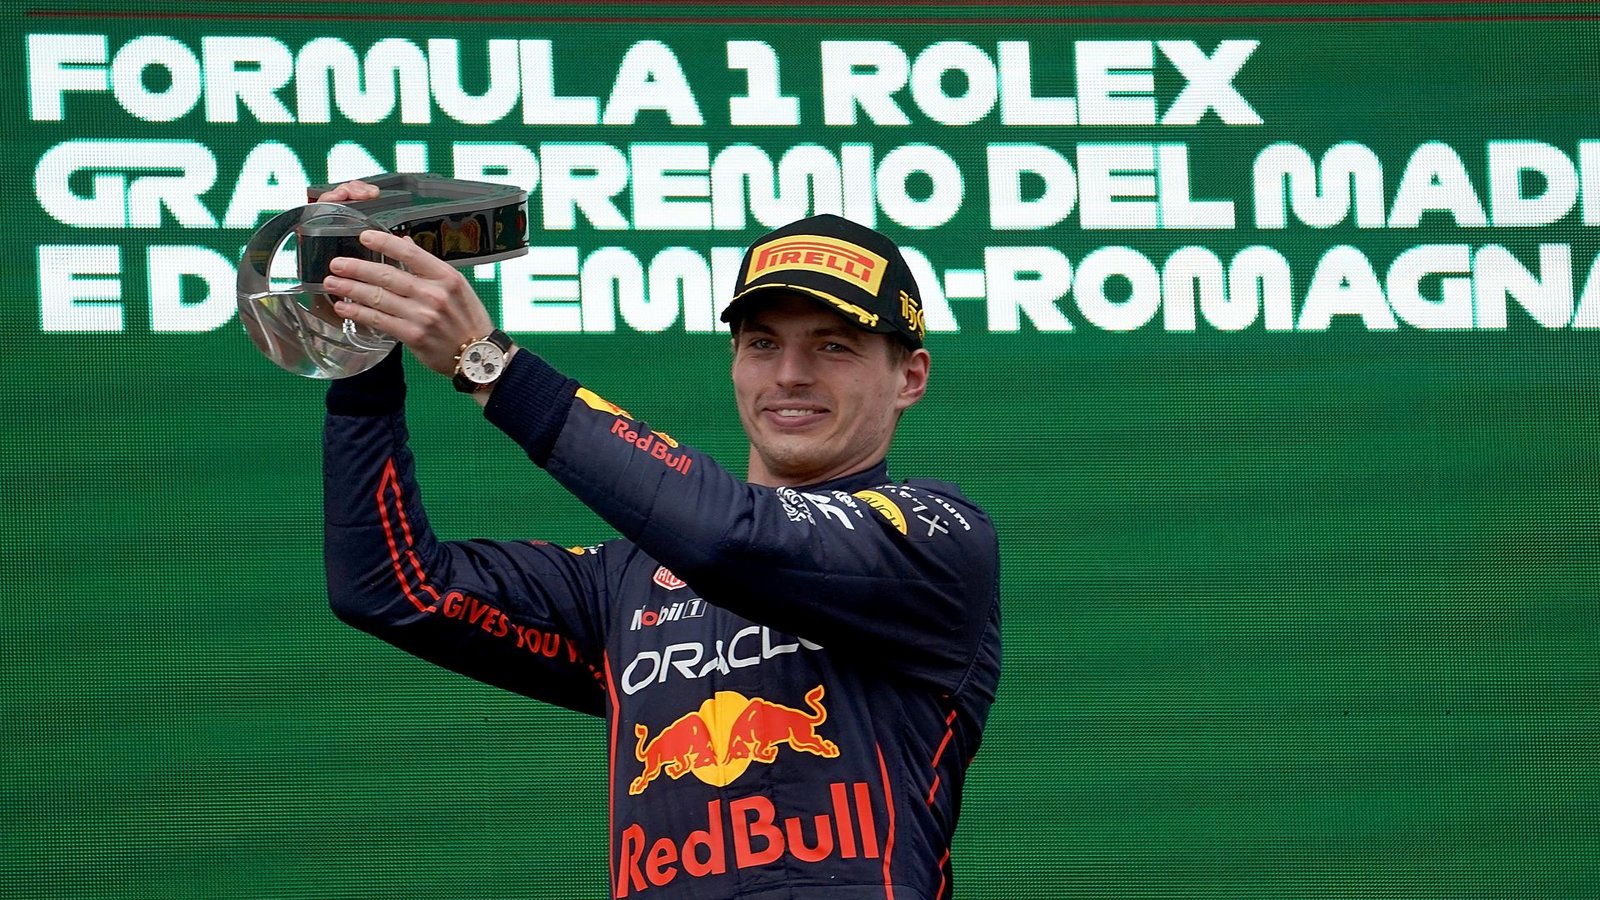 Siegte beim Grand Prix der Emilia-Romagna, weil er sich keine Fehler leistete: Sieger Max Verstappen aus den Niederlanden.Foto: Hasan Bratic/dpa